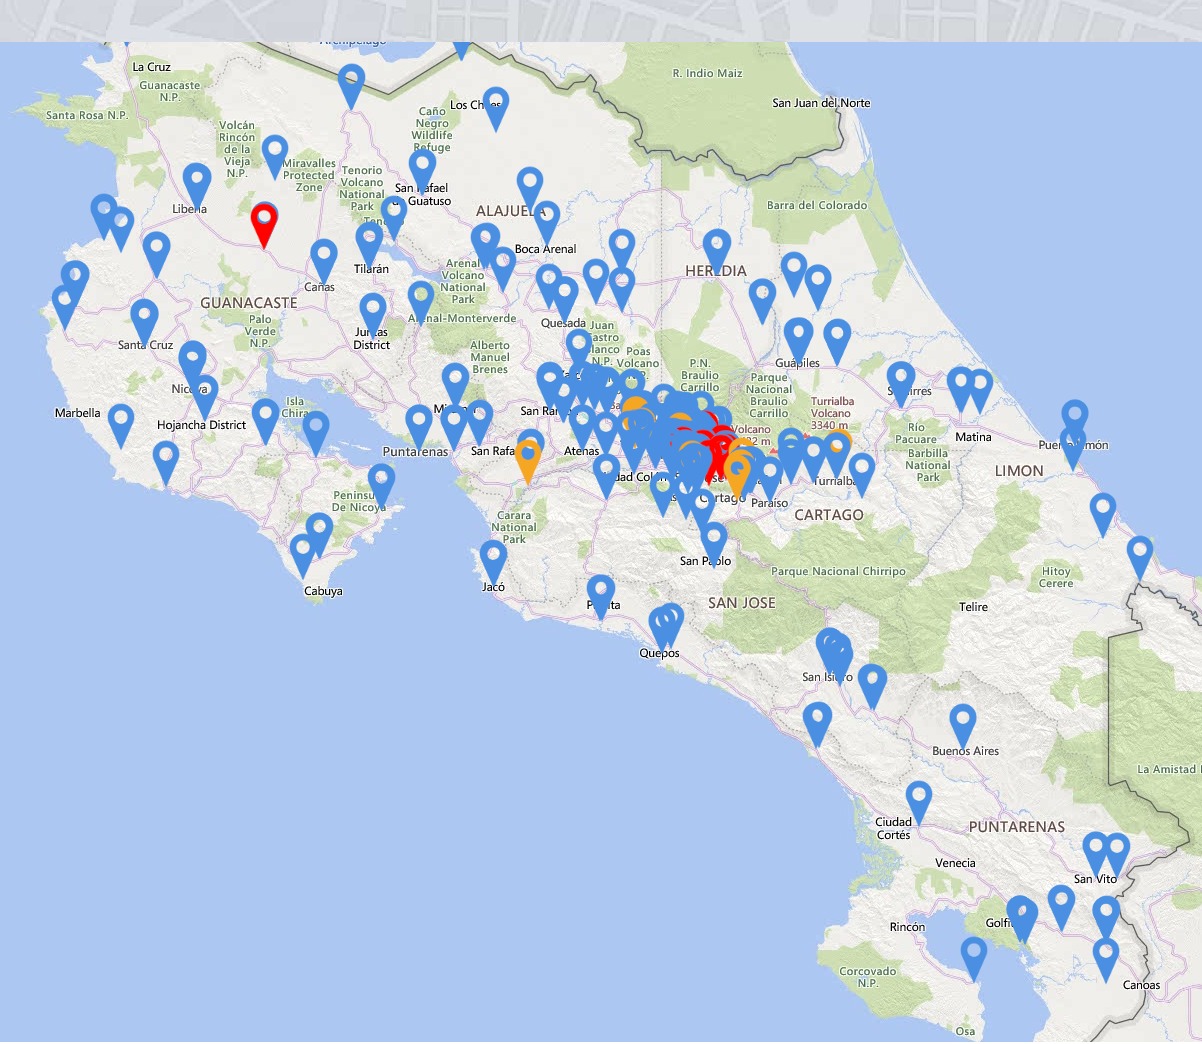 Imagen mapa de Costa Rica sobre recolección de residuos electrónicos